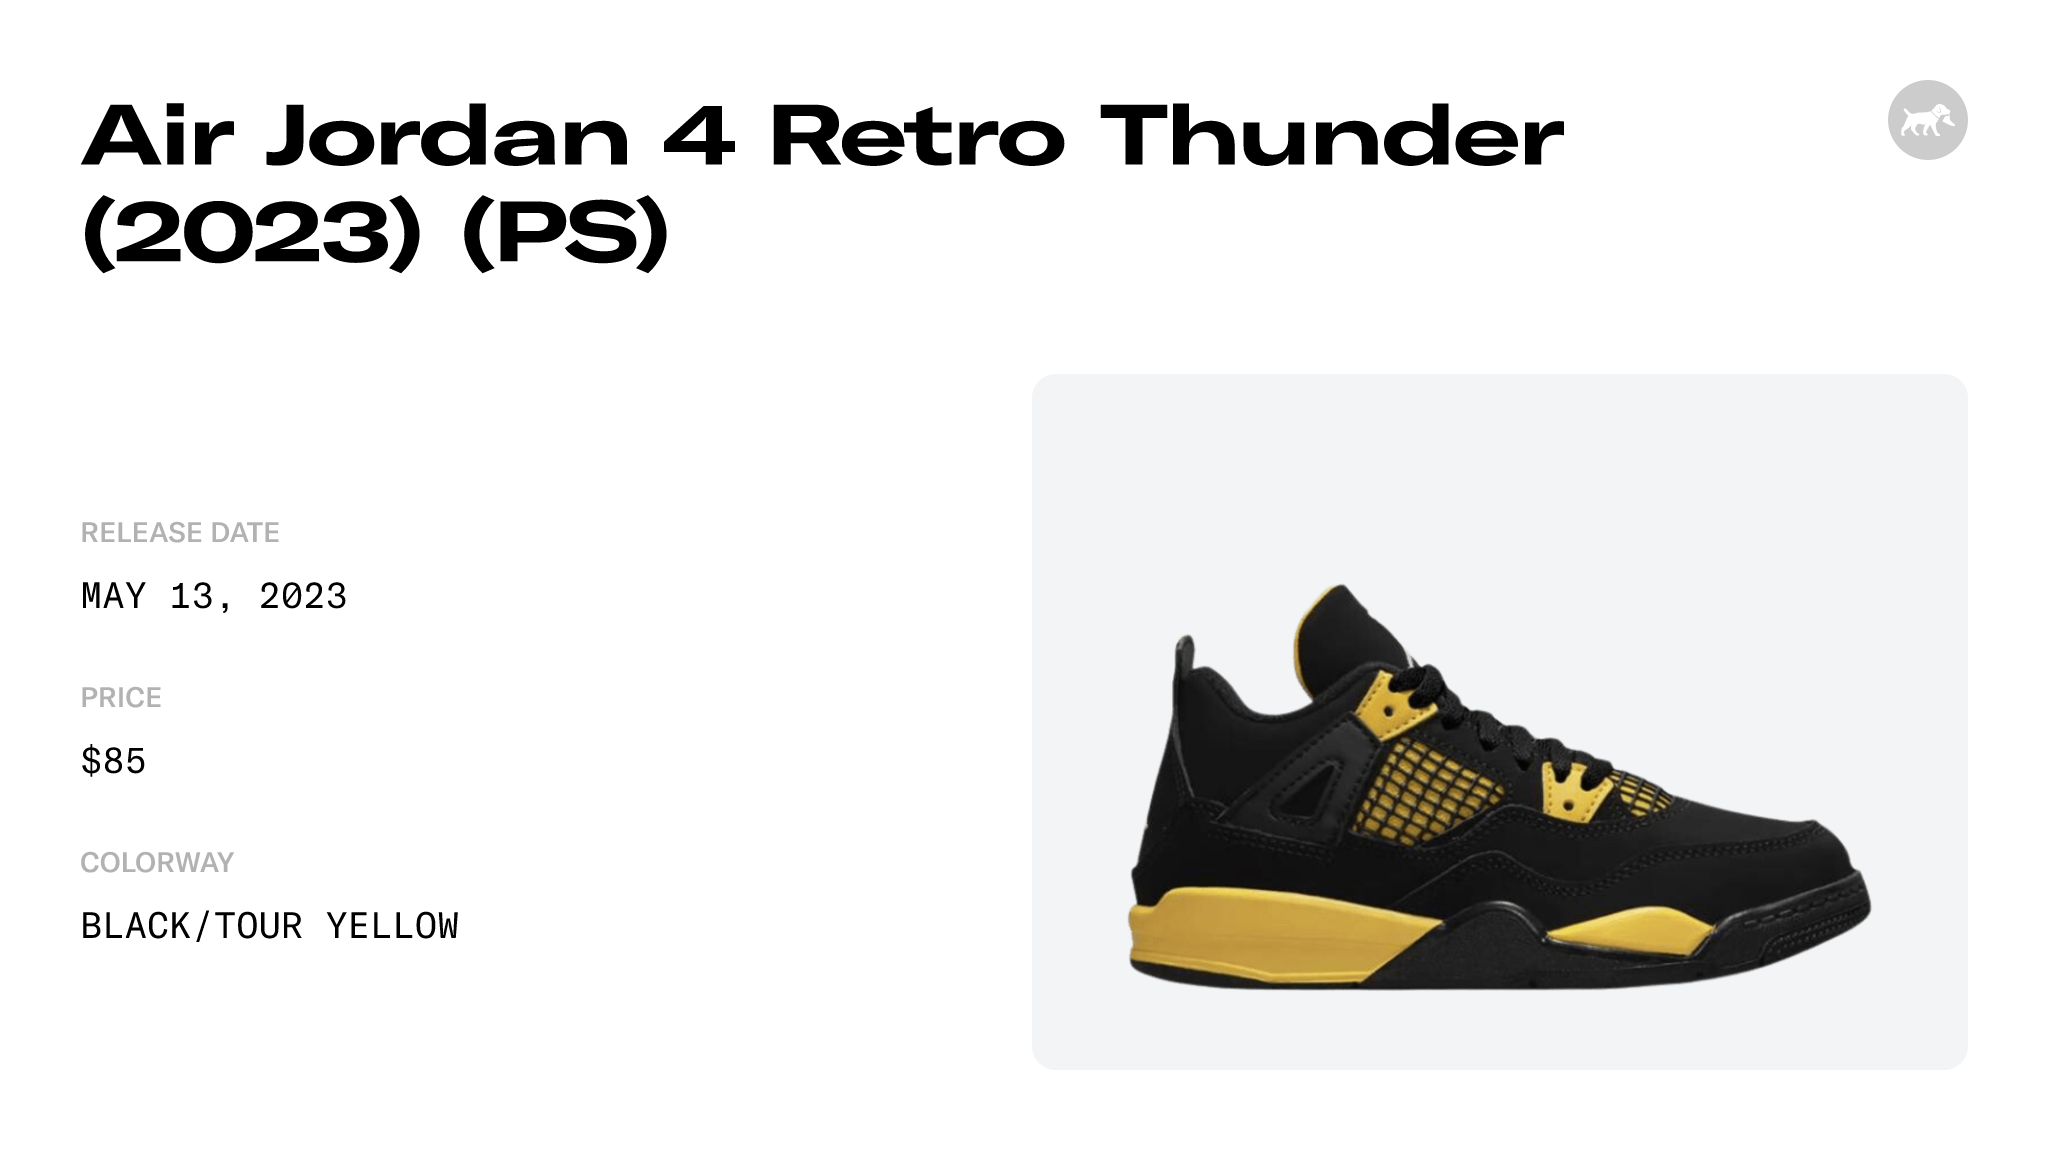 Air Jordan 4 Retro Thunder (2023) (PS) - BQ7669-017 Raffles and Release Date